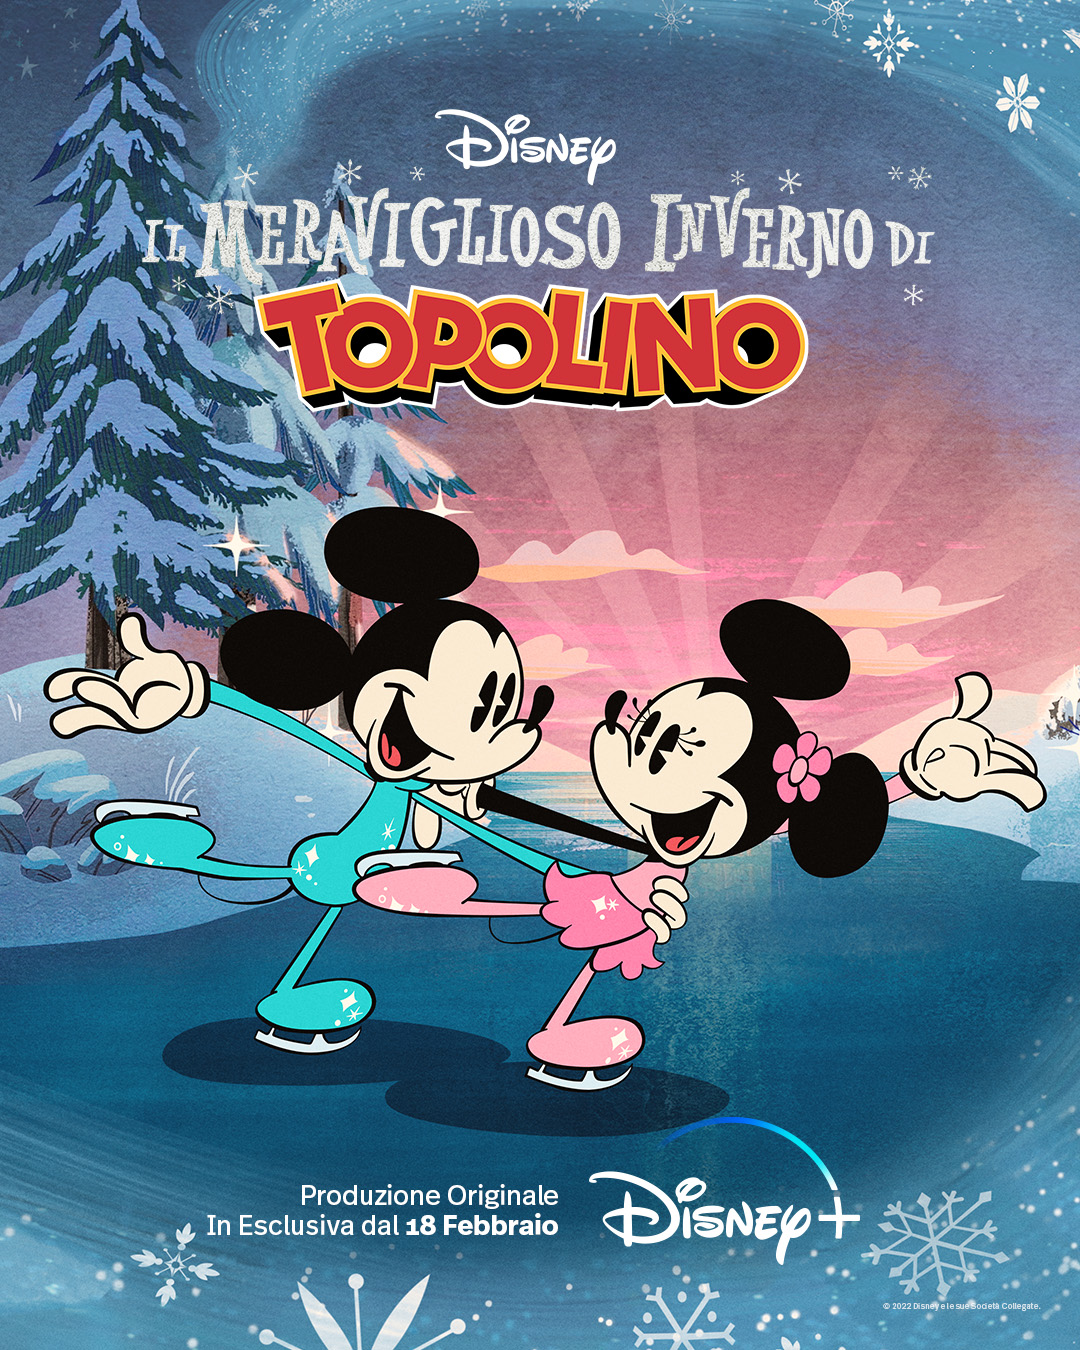 topolino e minnie pattinano sul ghiaccio nel poster de Il Meraviglioso Inverno di Topolino - nerdface